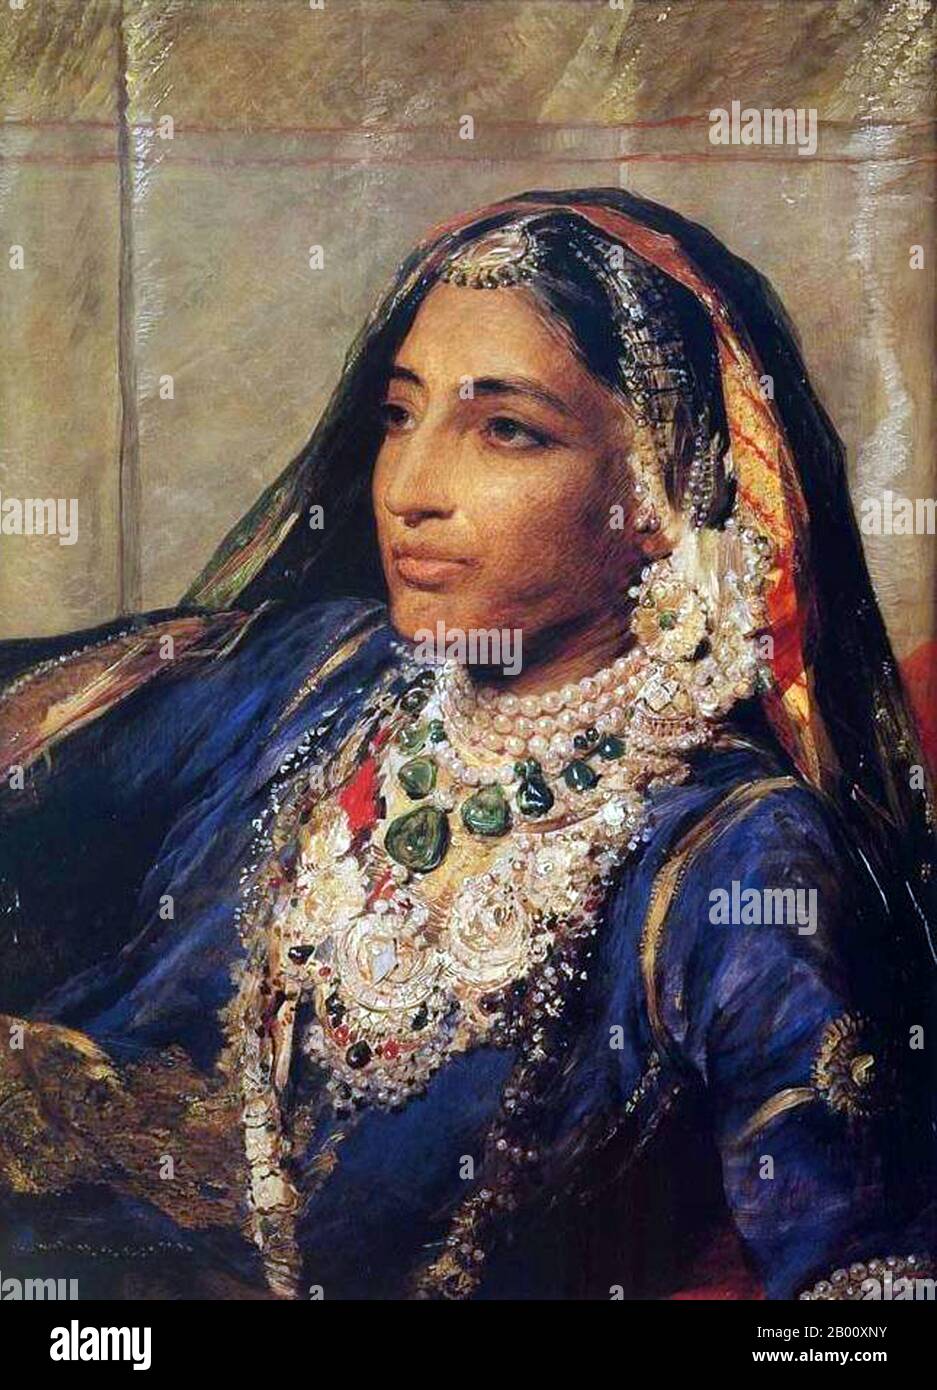 India: Ritratto di Maharani Jind Kaur (1817-1863). Olio su tela dipinto di George Richmond (1809-1896), 1863. Maharani Jind Kaur (1817-1863), conosciuto anche come Rani Jindan. Era la moglie più giovane di Maharajah Ranjit Singh e la madre dell'ultimo imperatore Sikh, Maharajah Duleep Singh. Nel 1845 divenne Reggente di Punjab per Duleep Singh, la Regina Madre (o mai) dell'ultimo Sikh sovrano del Punjab. Era rinomata per la sua grande bellezza e il suo fascino personale, insieme alla sua forza di volontà e opposizione all'imperialismo britannico in India. Foto Stock